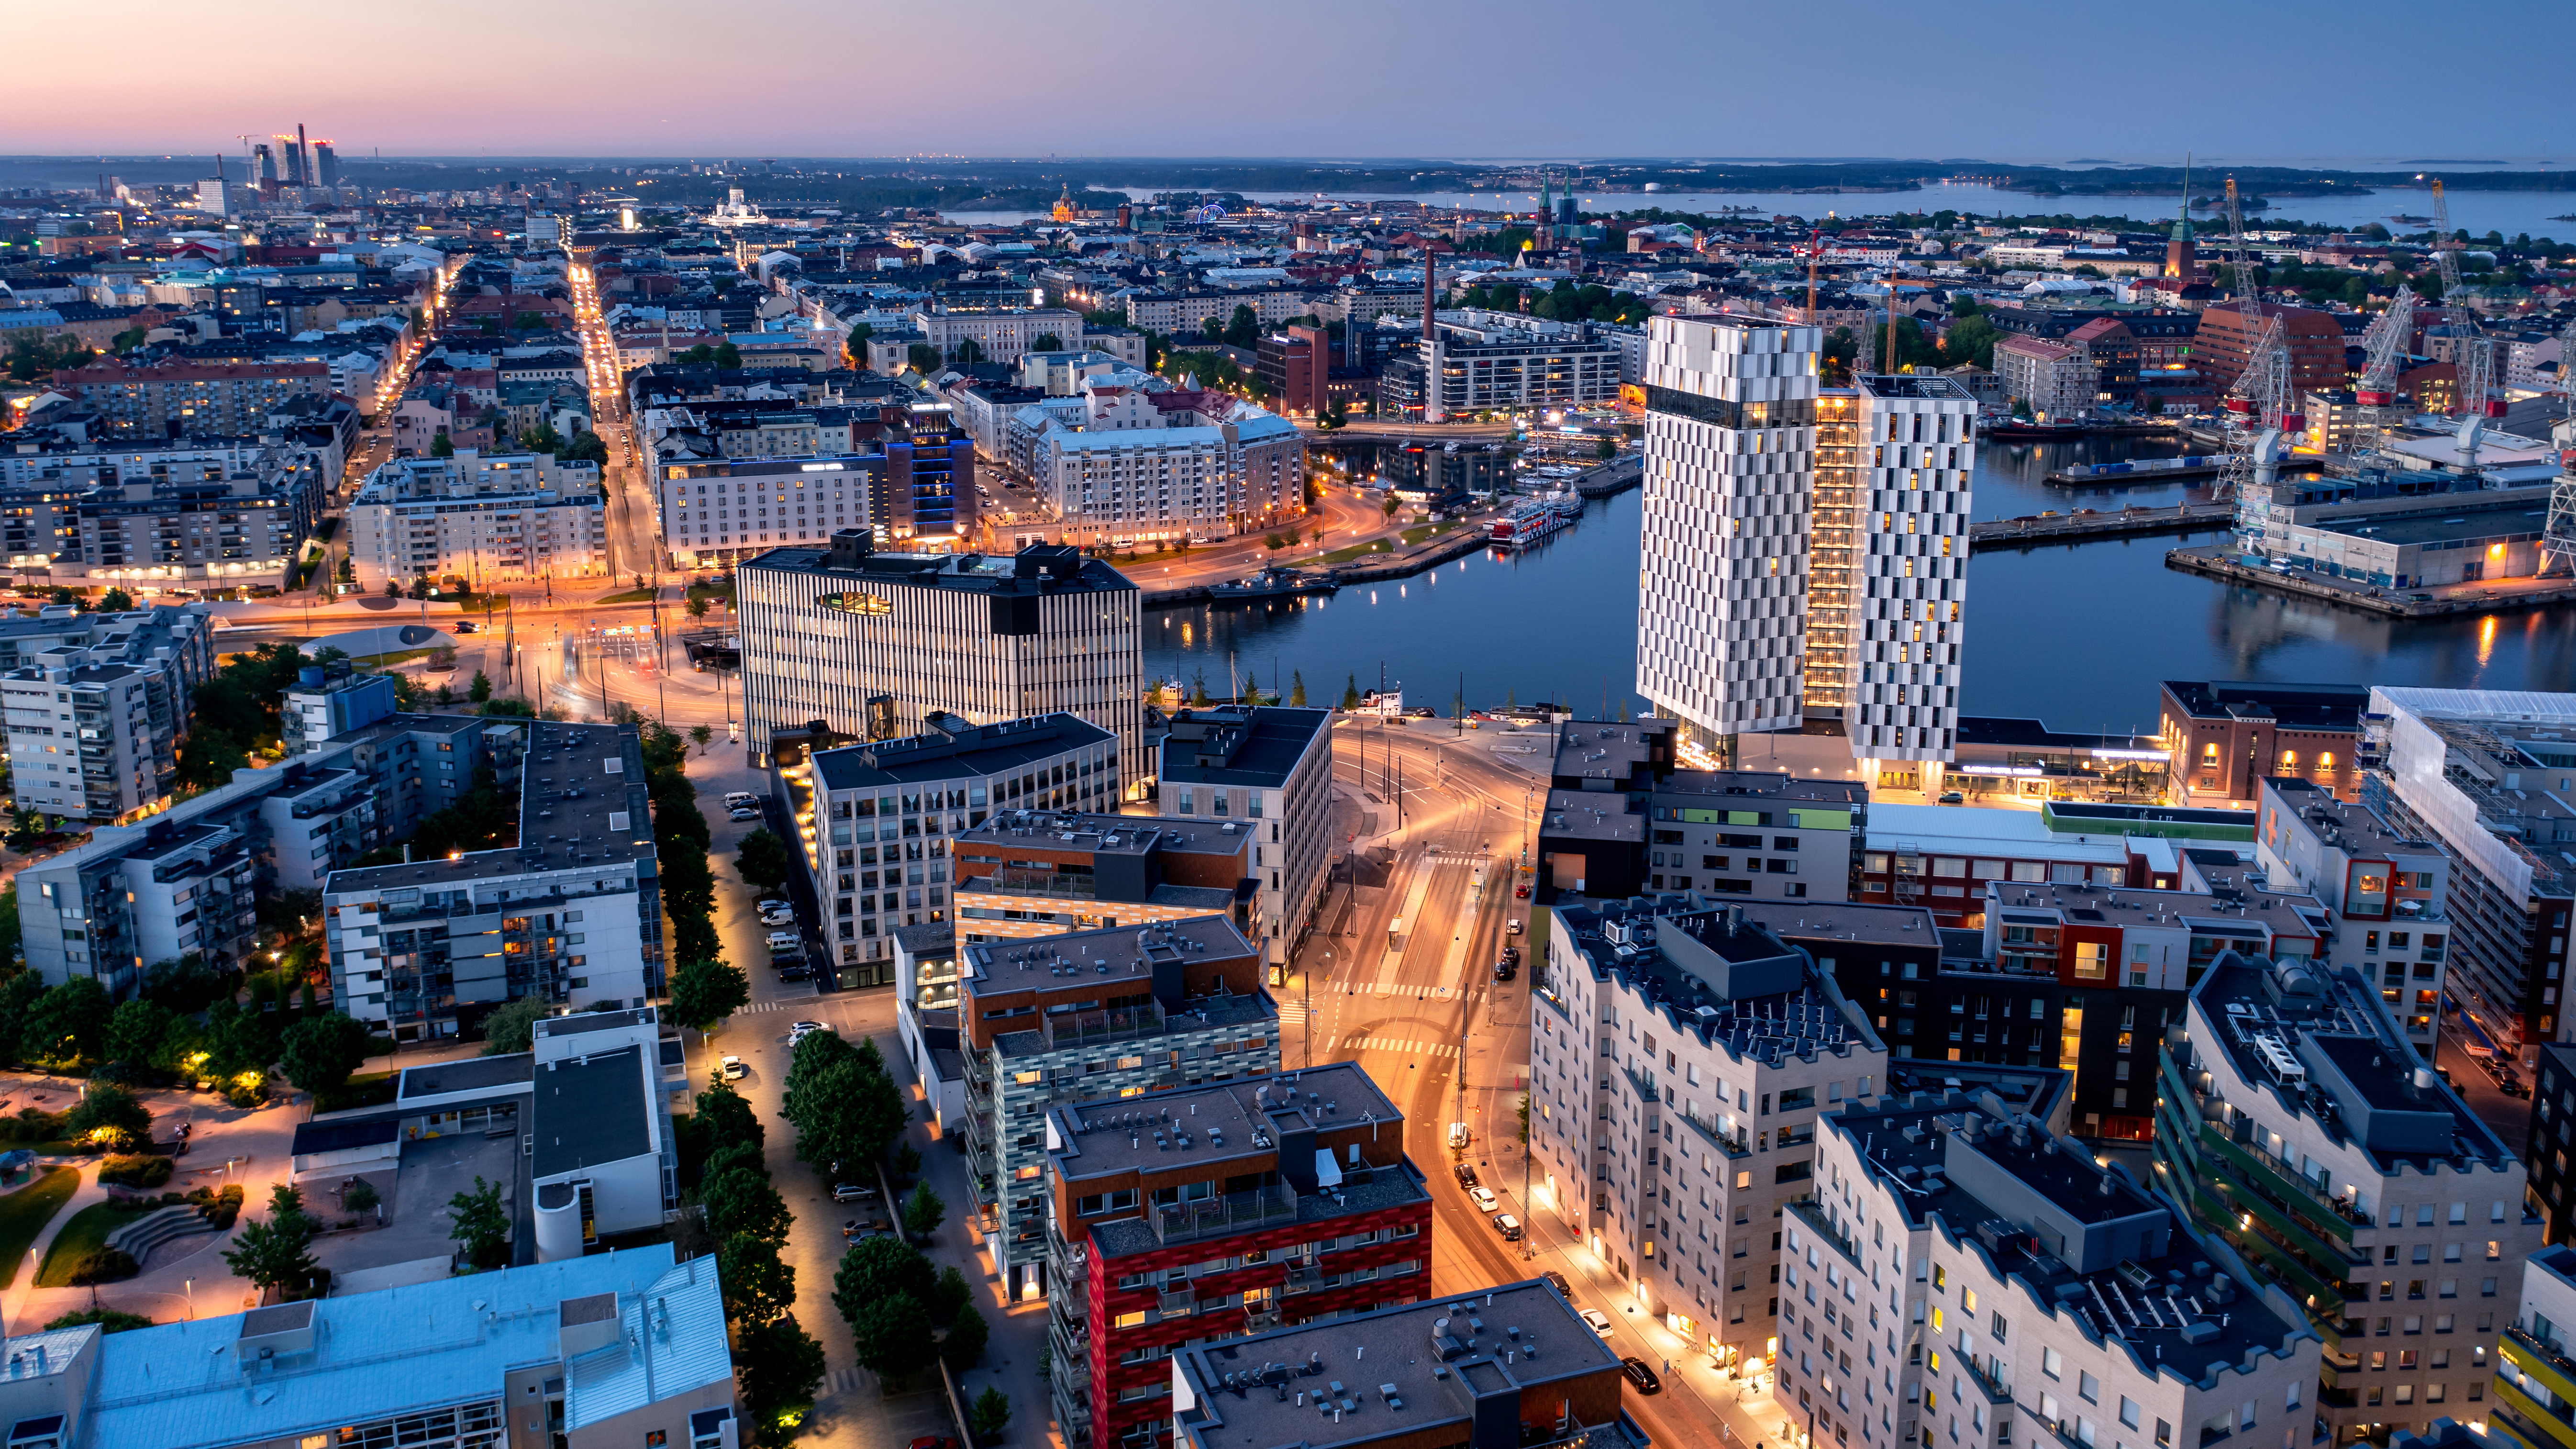 Хельсинки, столица Финляндии, где иностранцы могут получить гражданство